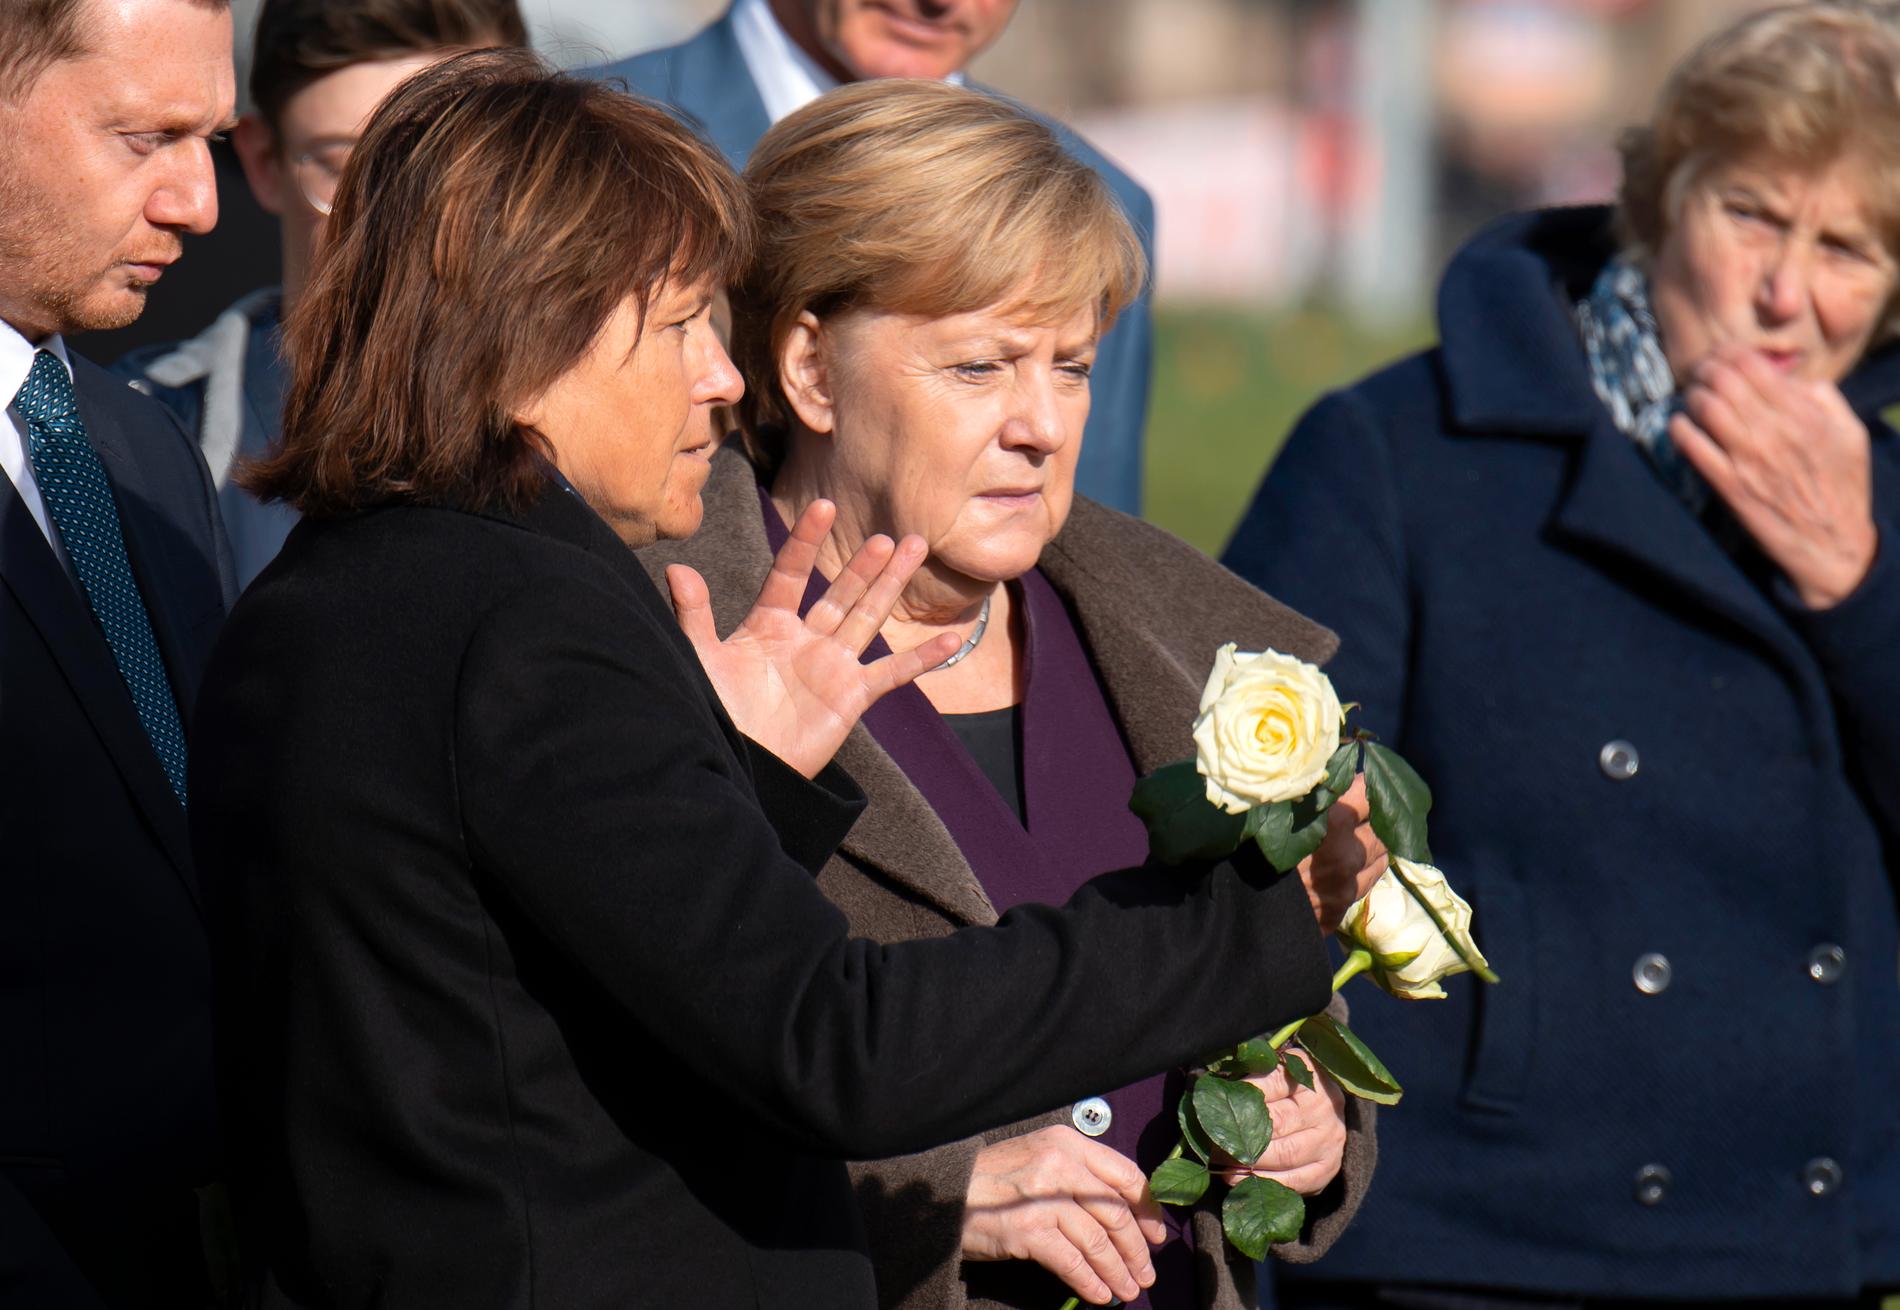 Angela Merkel (mitten) lade ned blommor på minnesplatsen i Zwickau för att hedra offren. På bilden syns också Zwickaus borgmästare Findeiss (vänster om Merkel) och Sachsens regionala regeringschef Michael Kretschmer i vänstra hörnet.